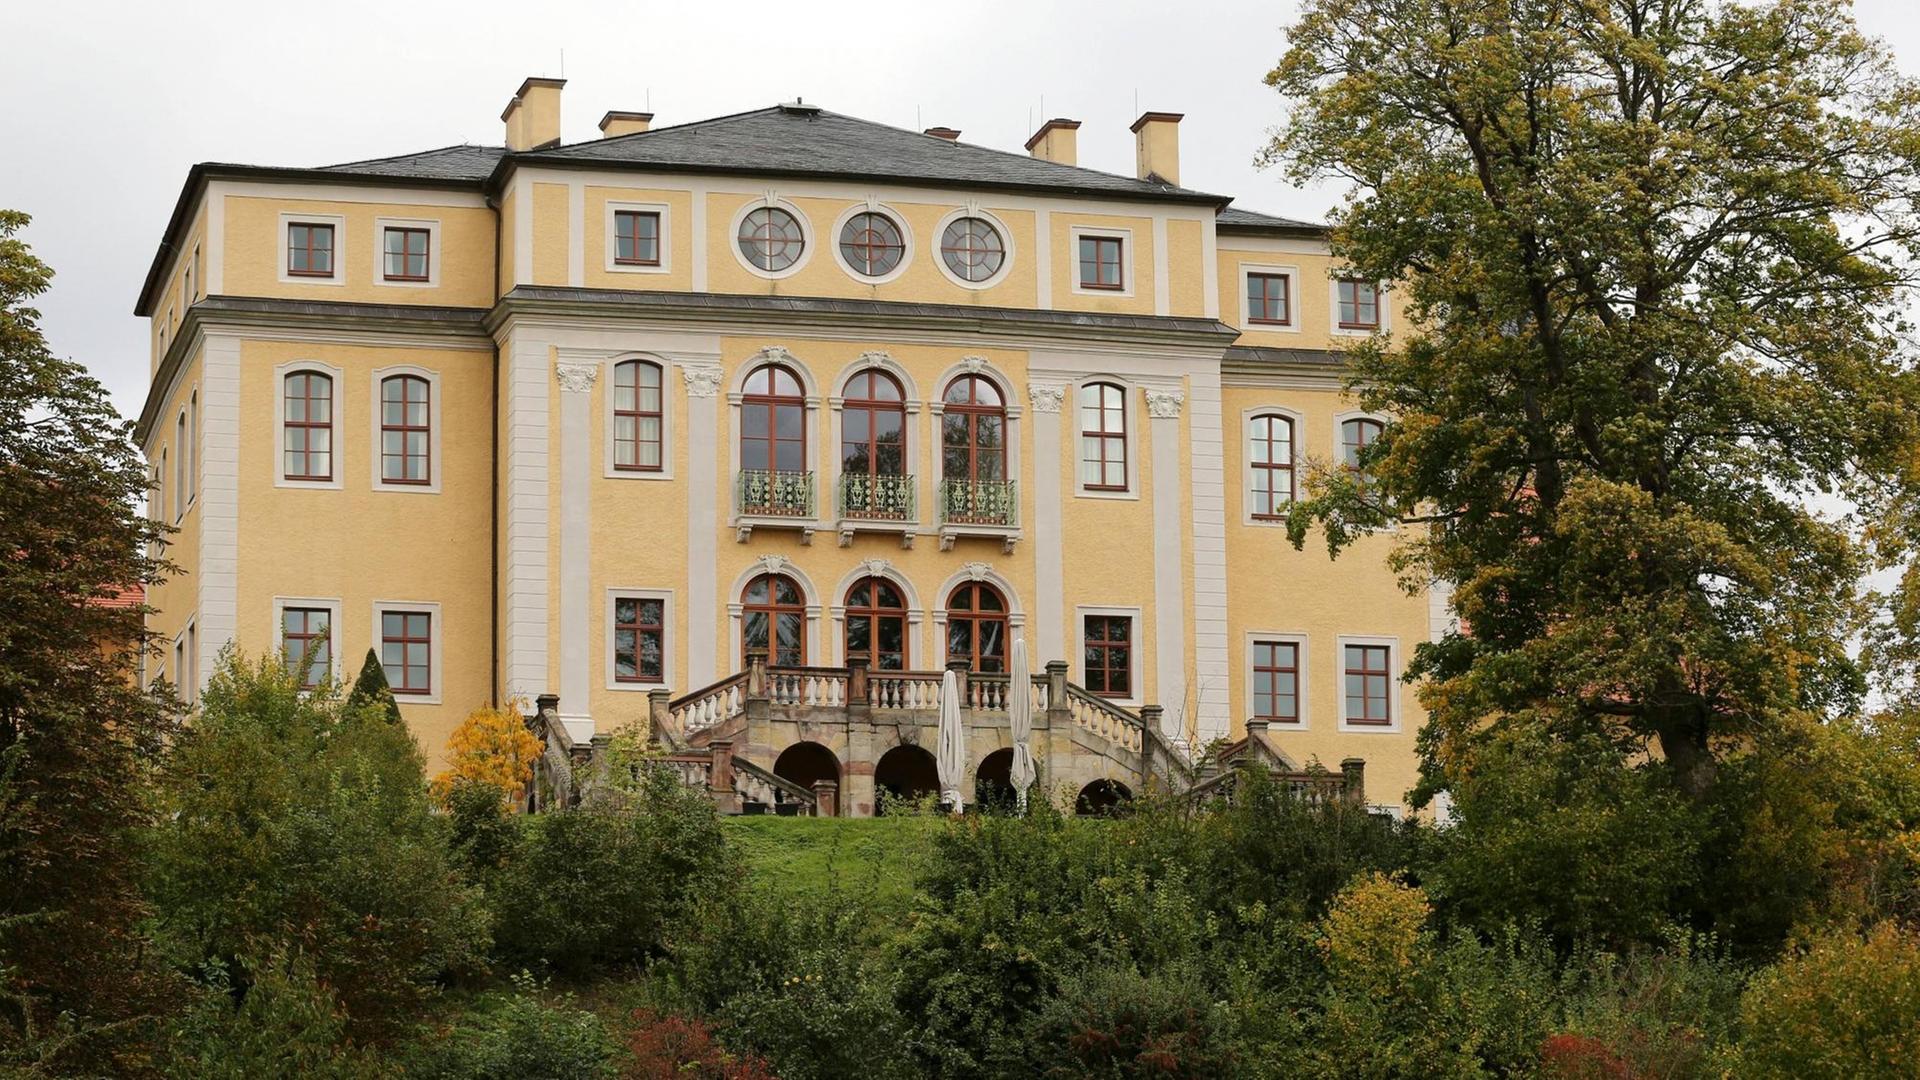 Das gelbe Barockschloss auf einem Hügel mit großer Freitreppe, die von alten Bäumen umgeben ist.